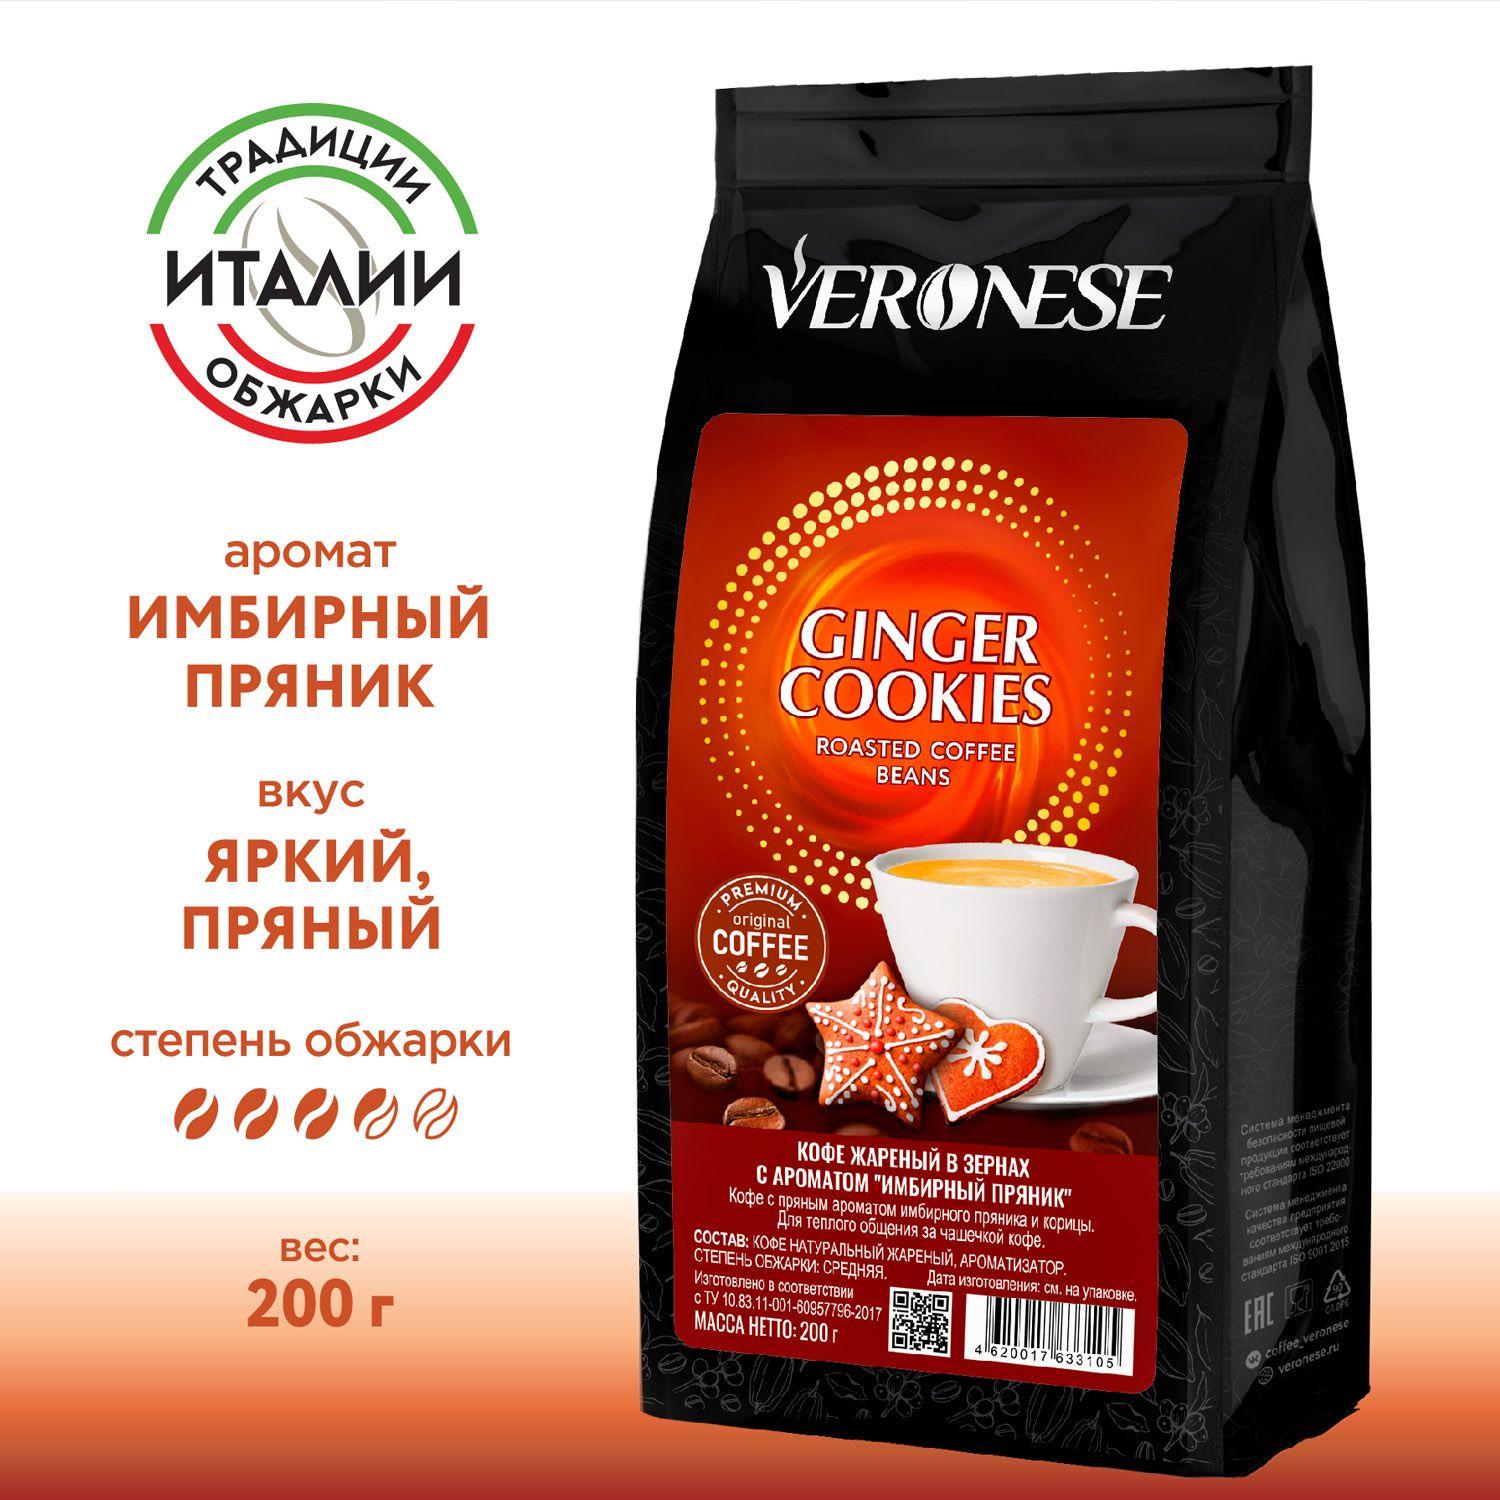 Veronese | Кофе в зернах с ароматом Ginger cookies, ароматизированный натуральный кофе Имбирный пряник, 200 гр.